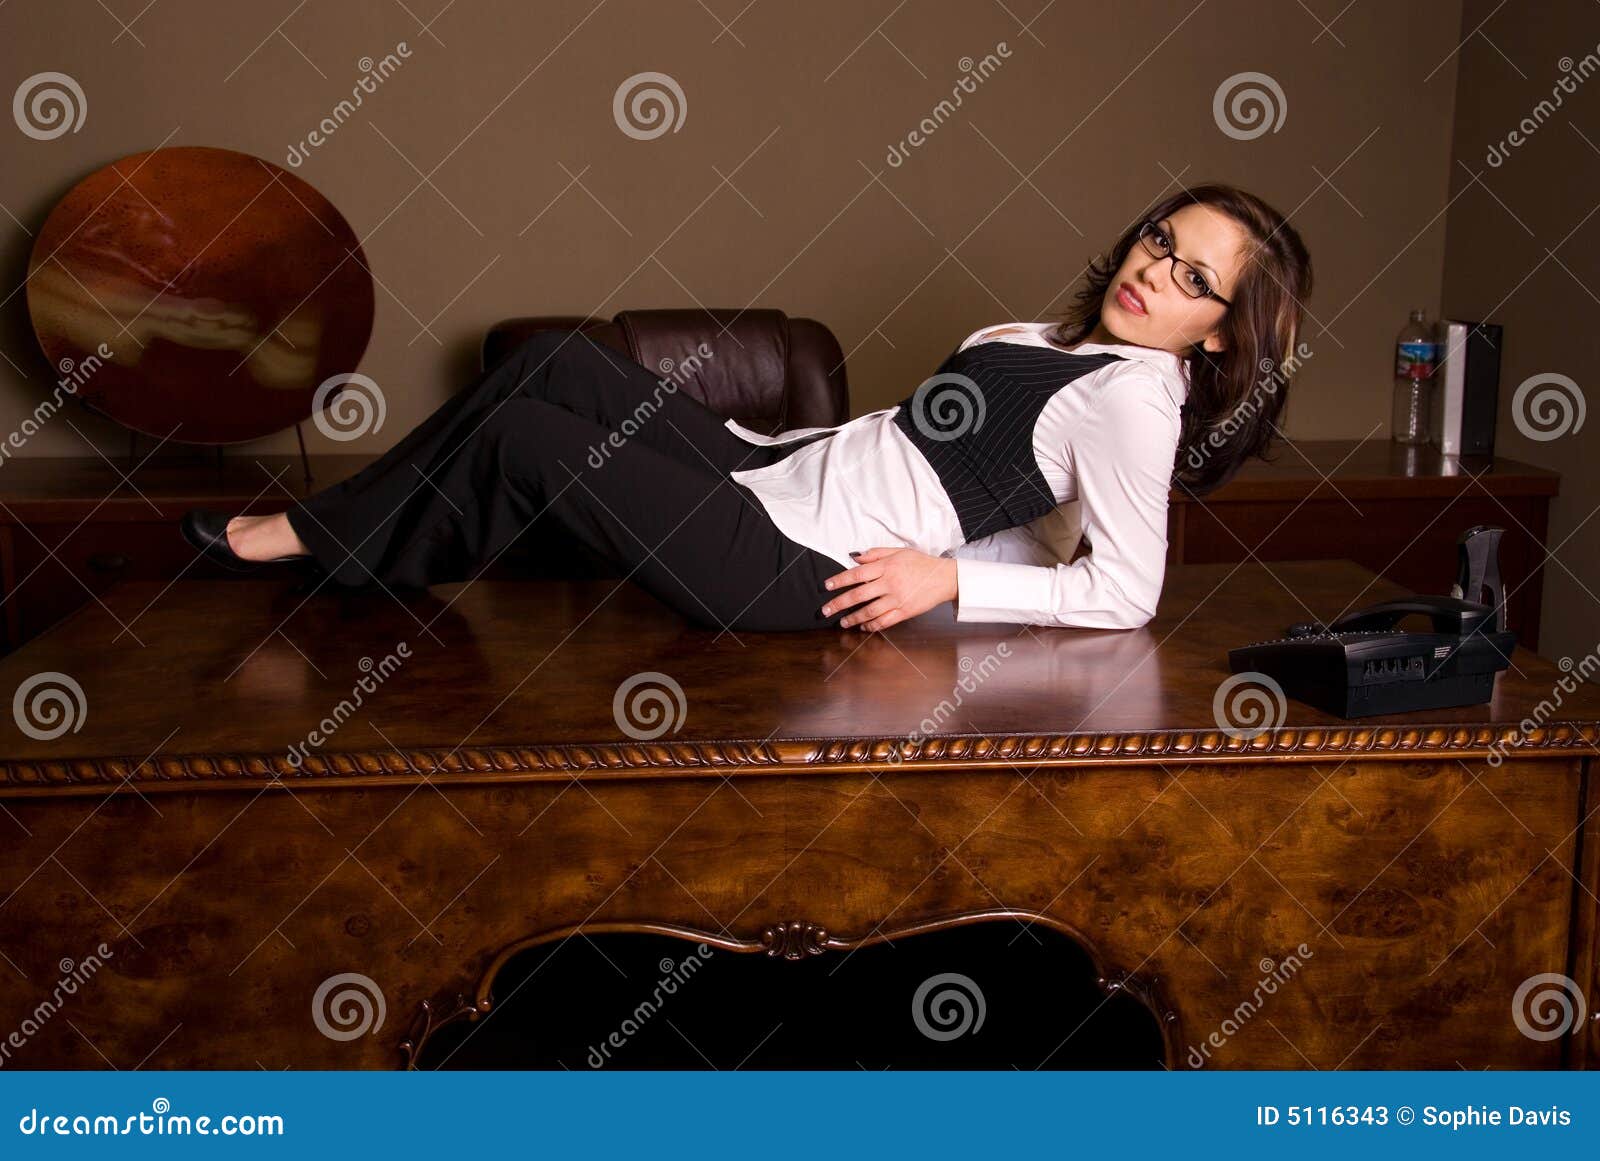 Seductive Secretary Stock Image Image Of Inside Girl 5116343